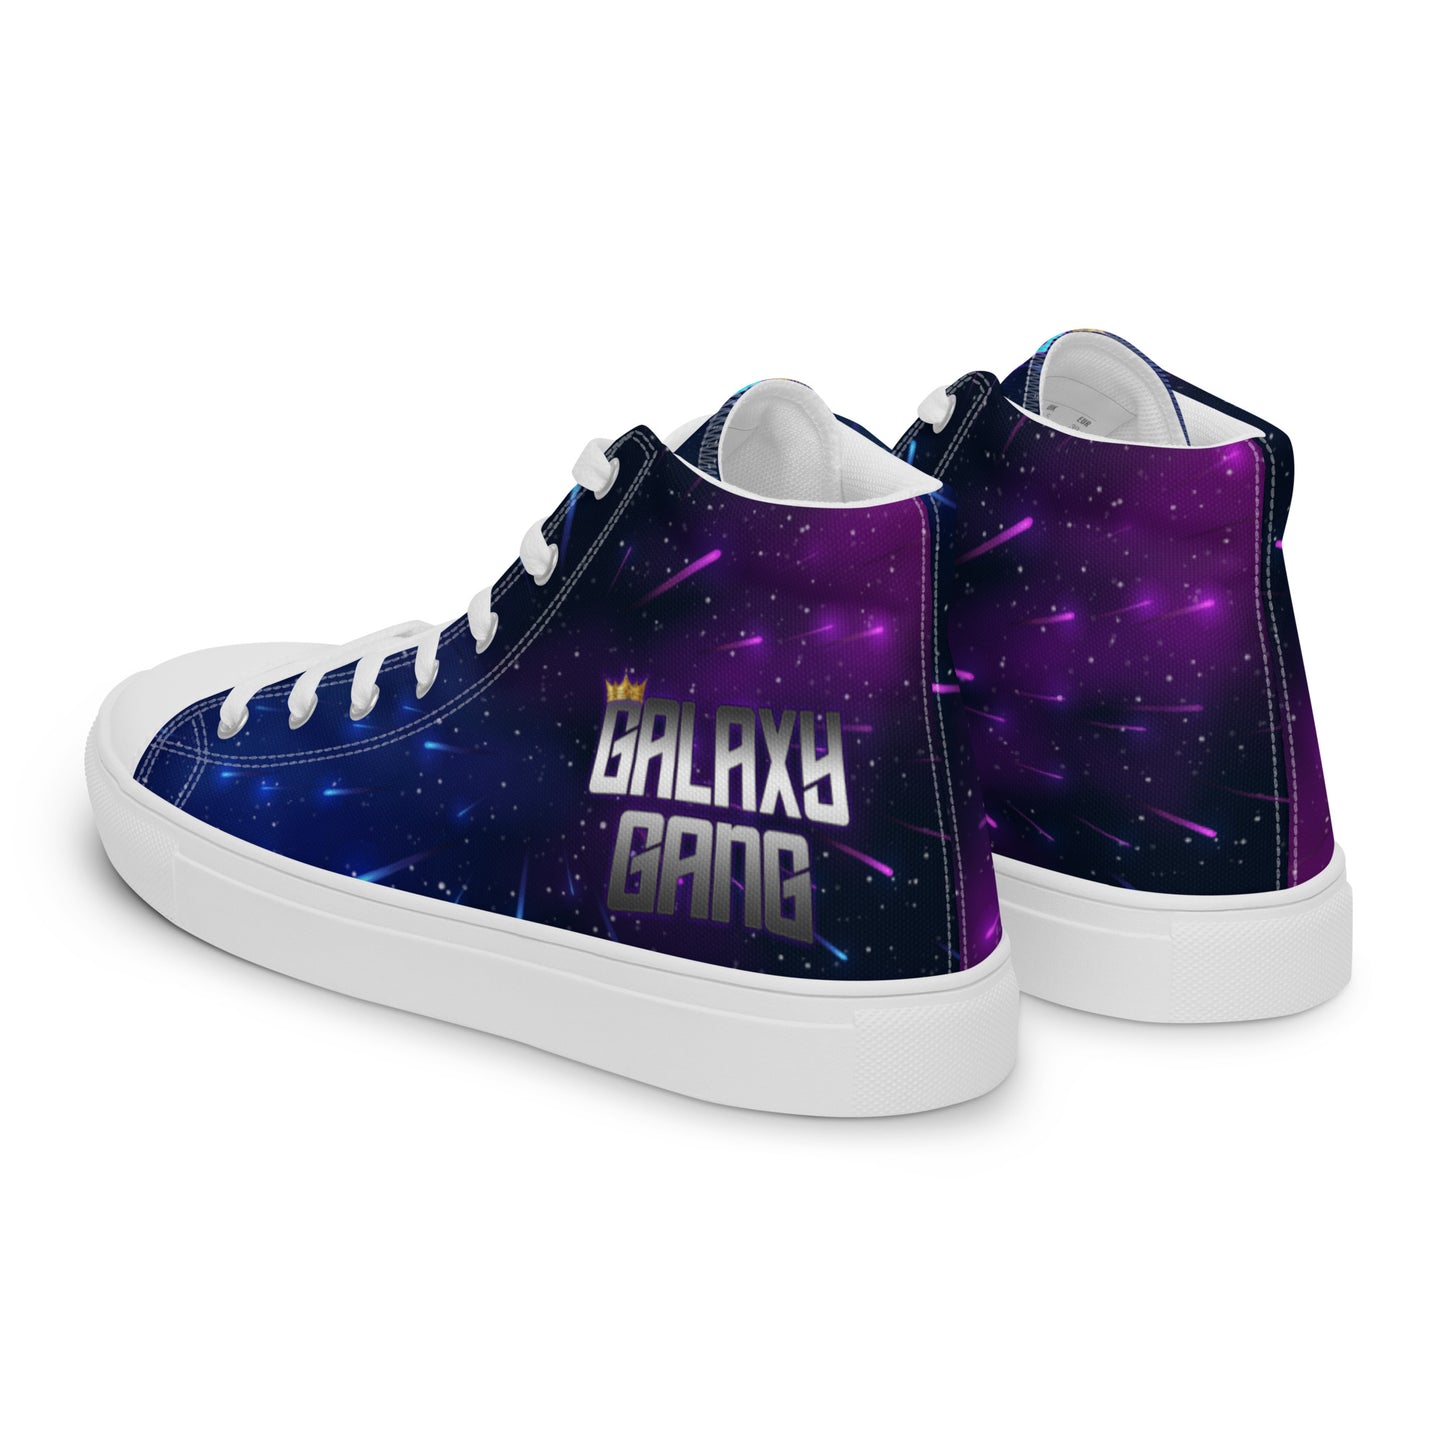 Galaxy Gang High Top Nebula Shoes